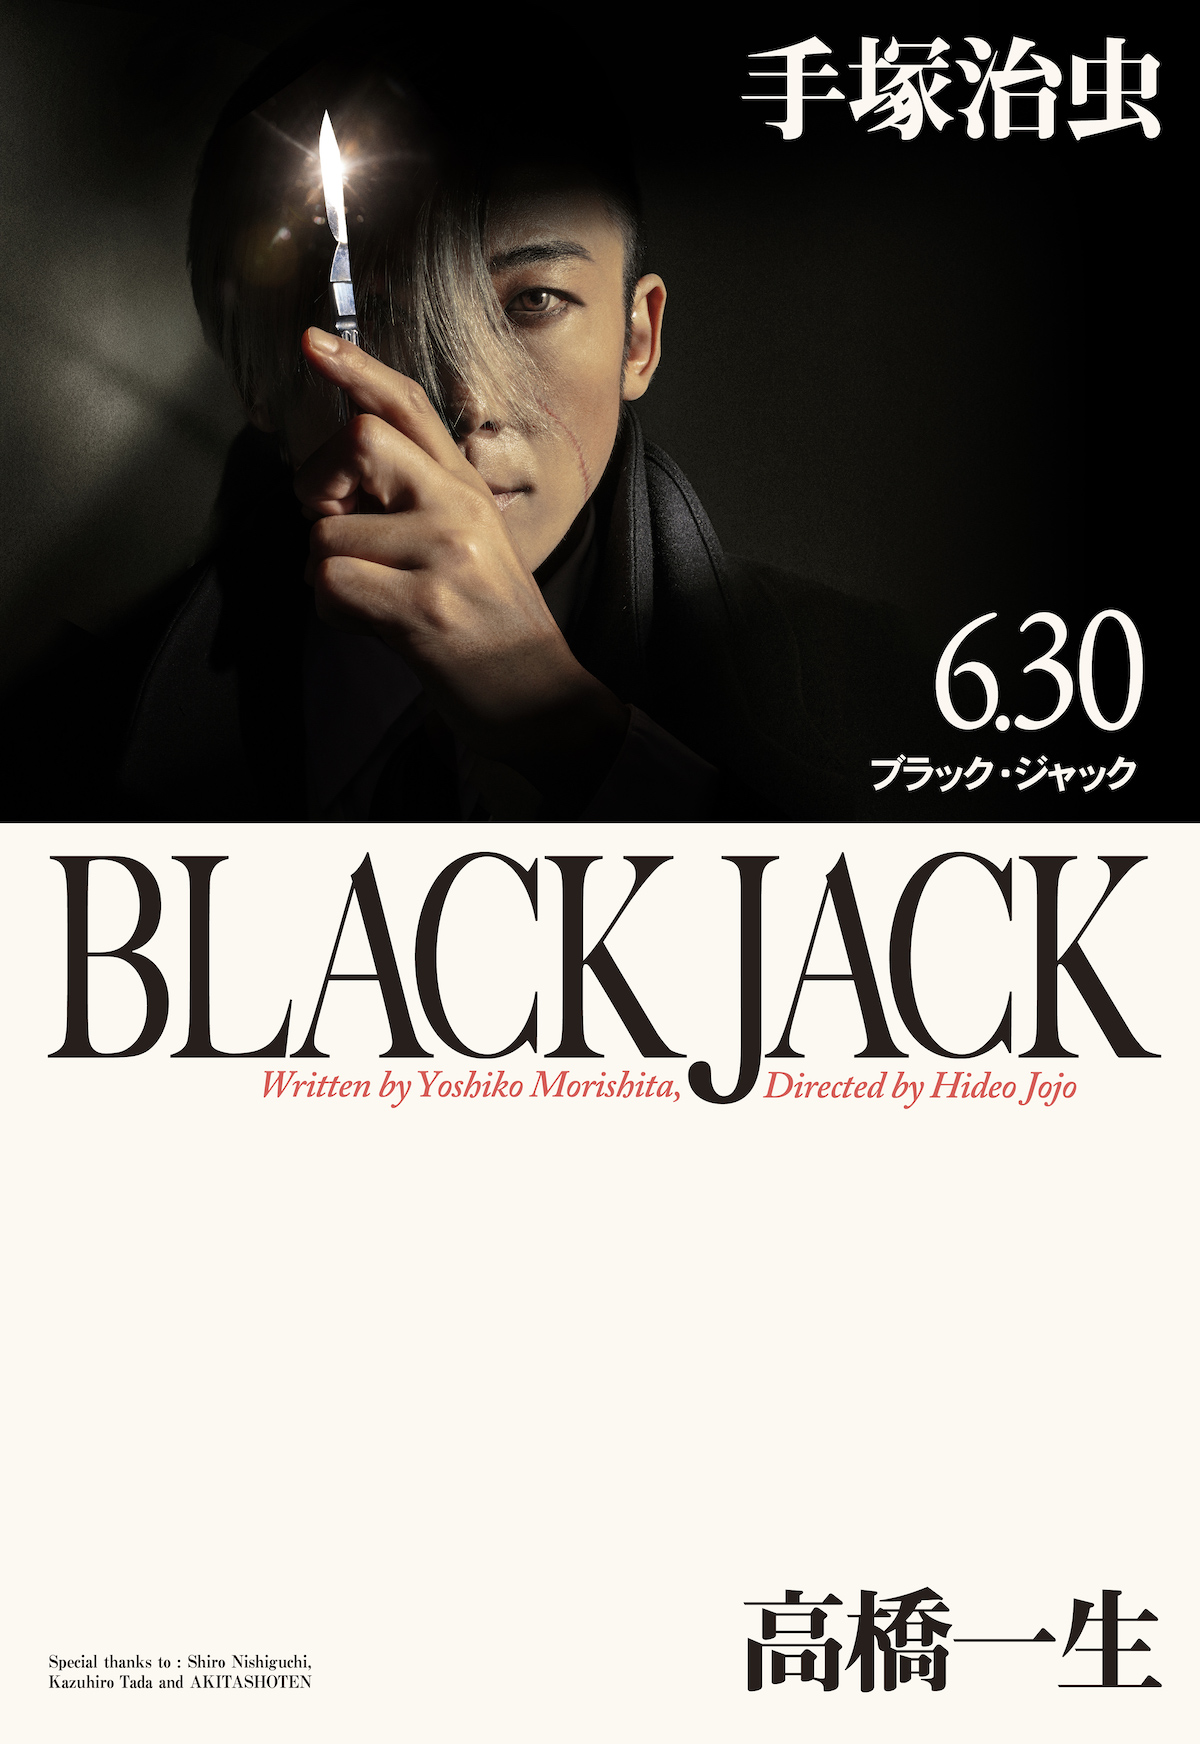 『ブラック・ジャック』メインビジュアル公開